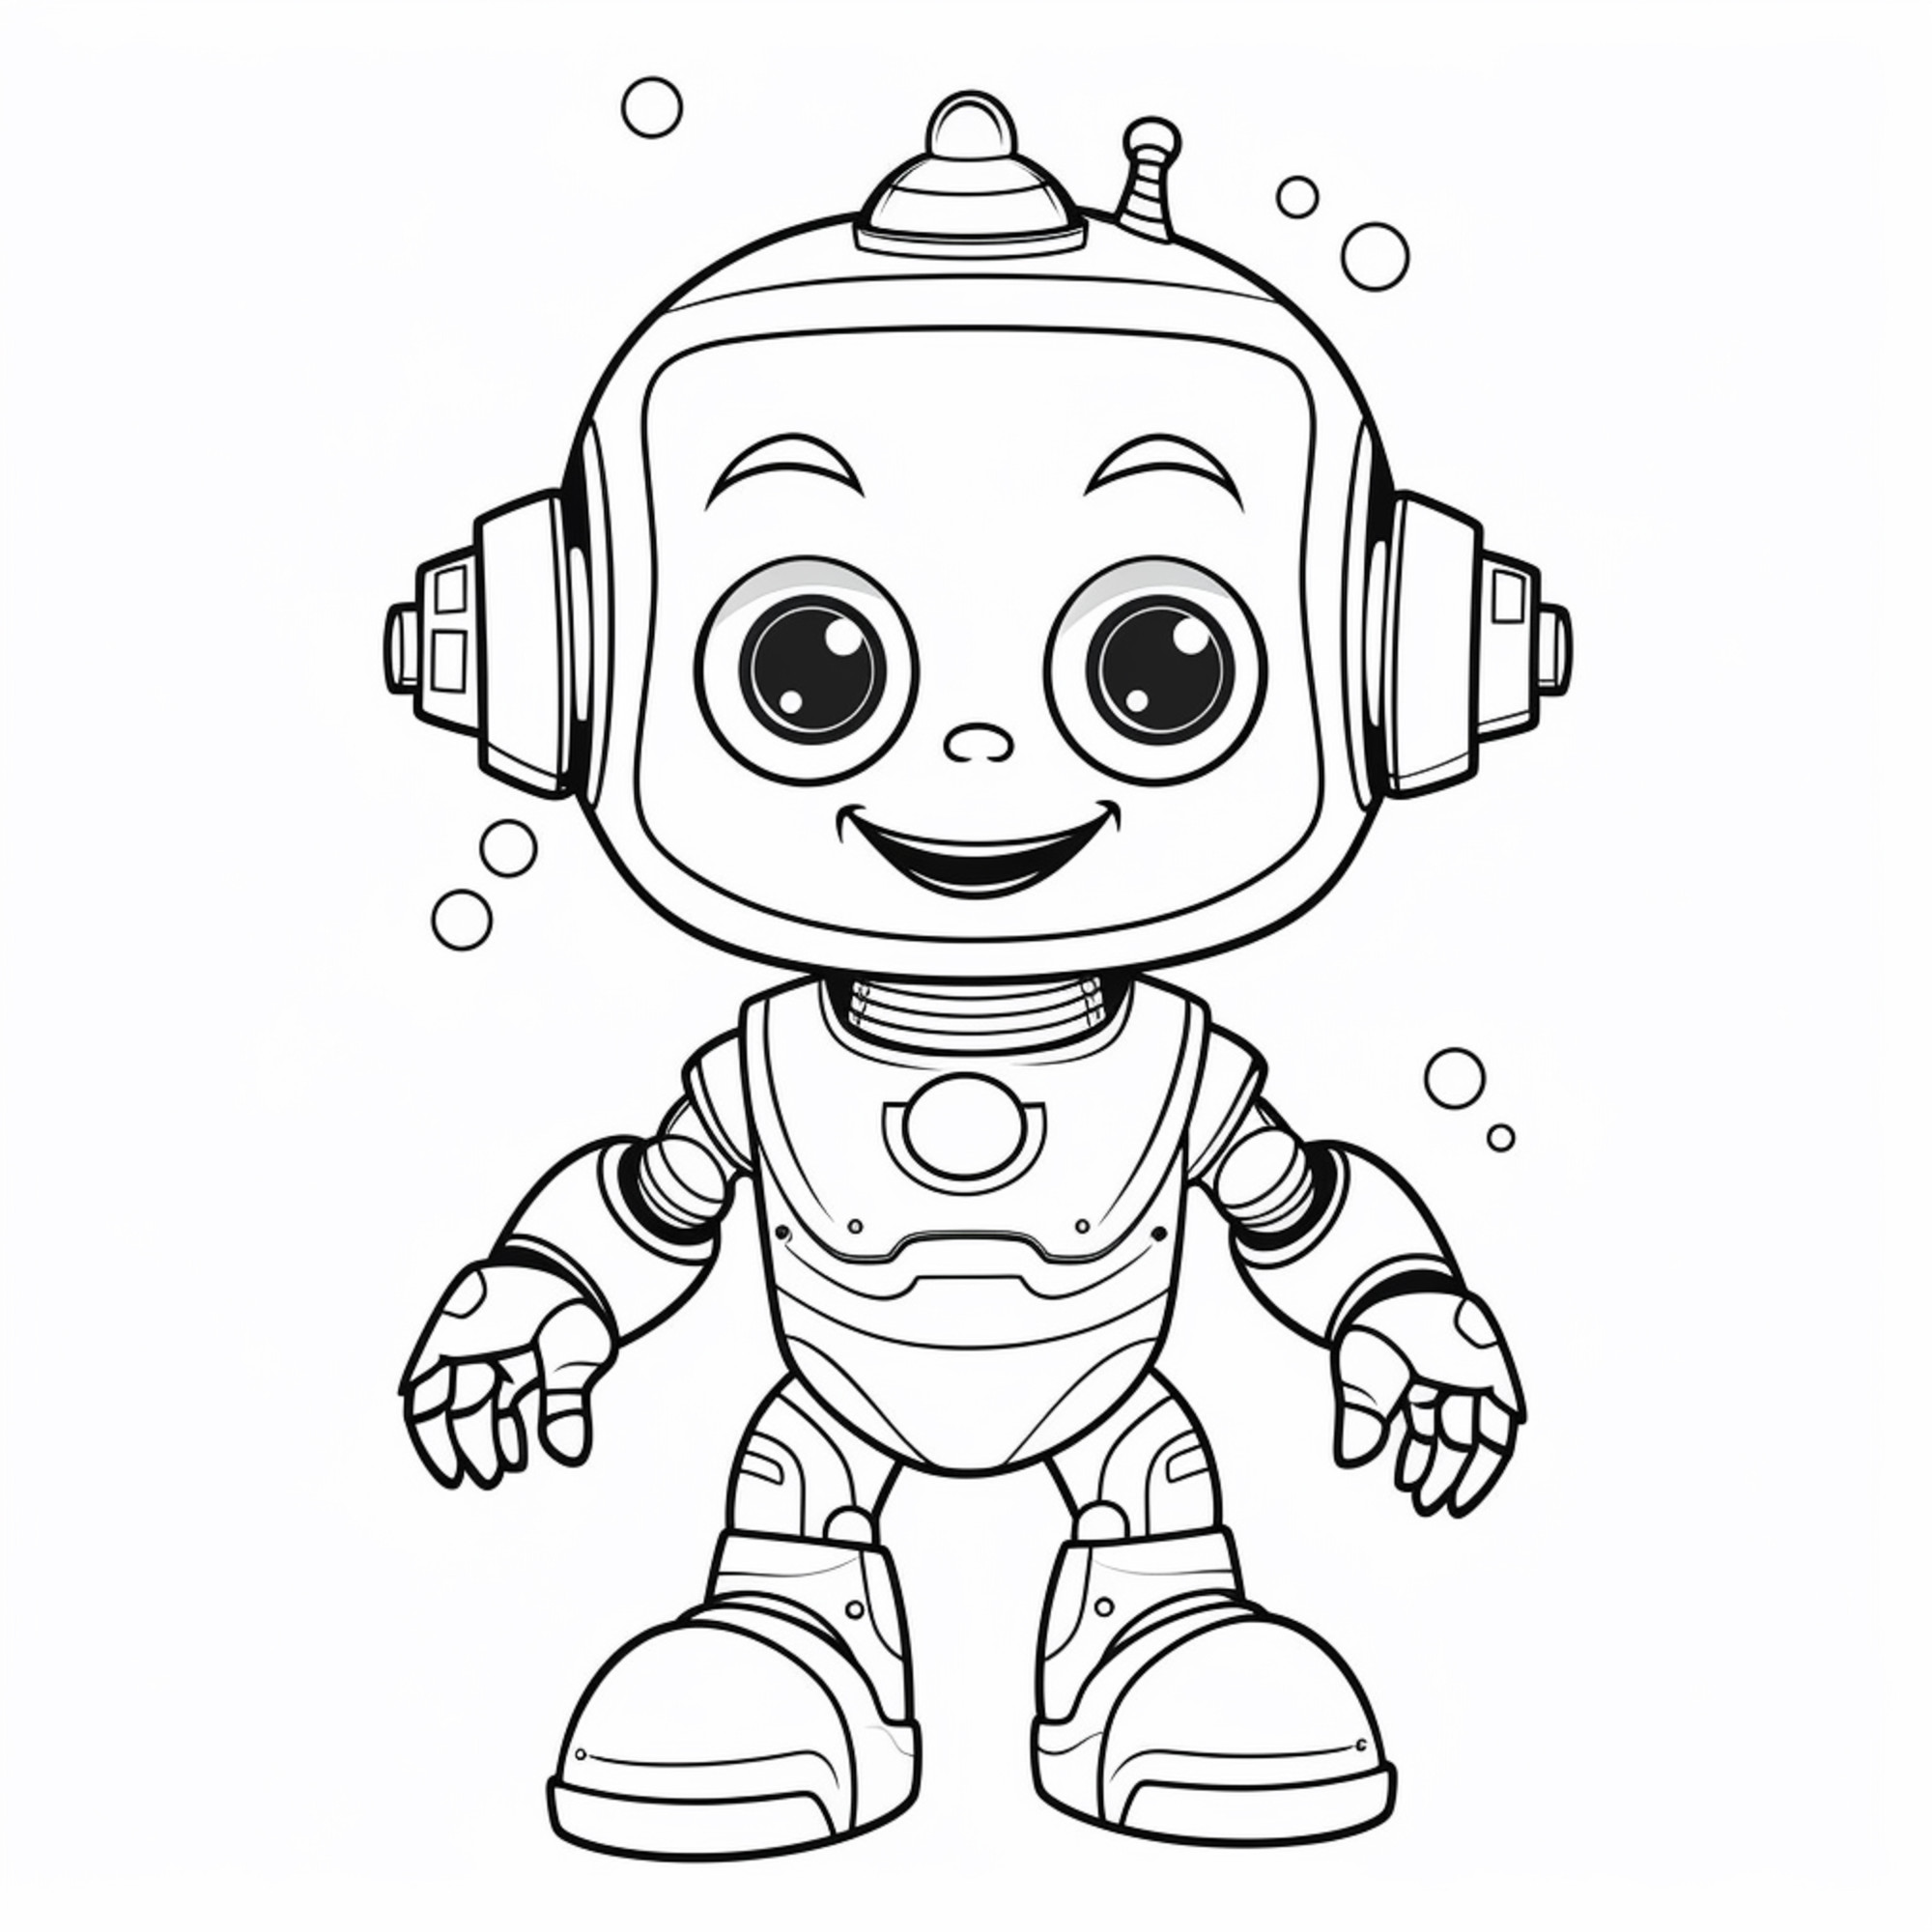 Раскраска для детей: счастливый робот с широкой улыбкой на лице